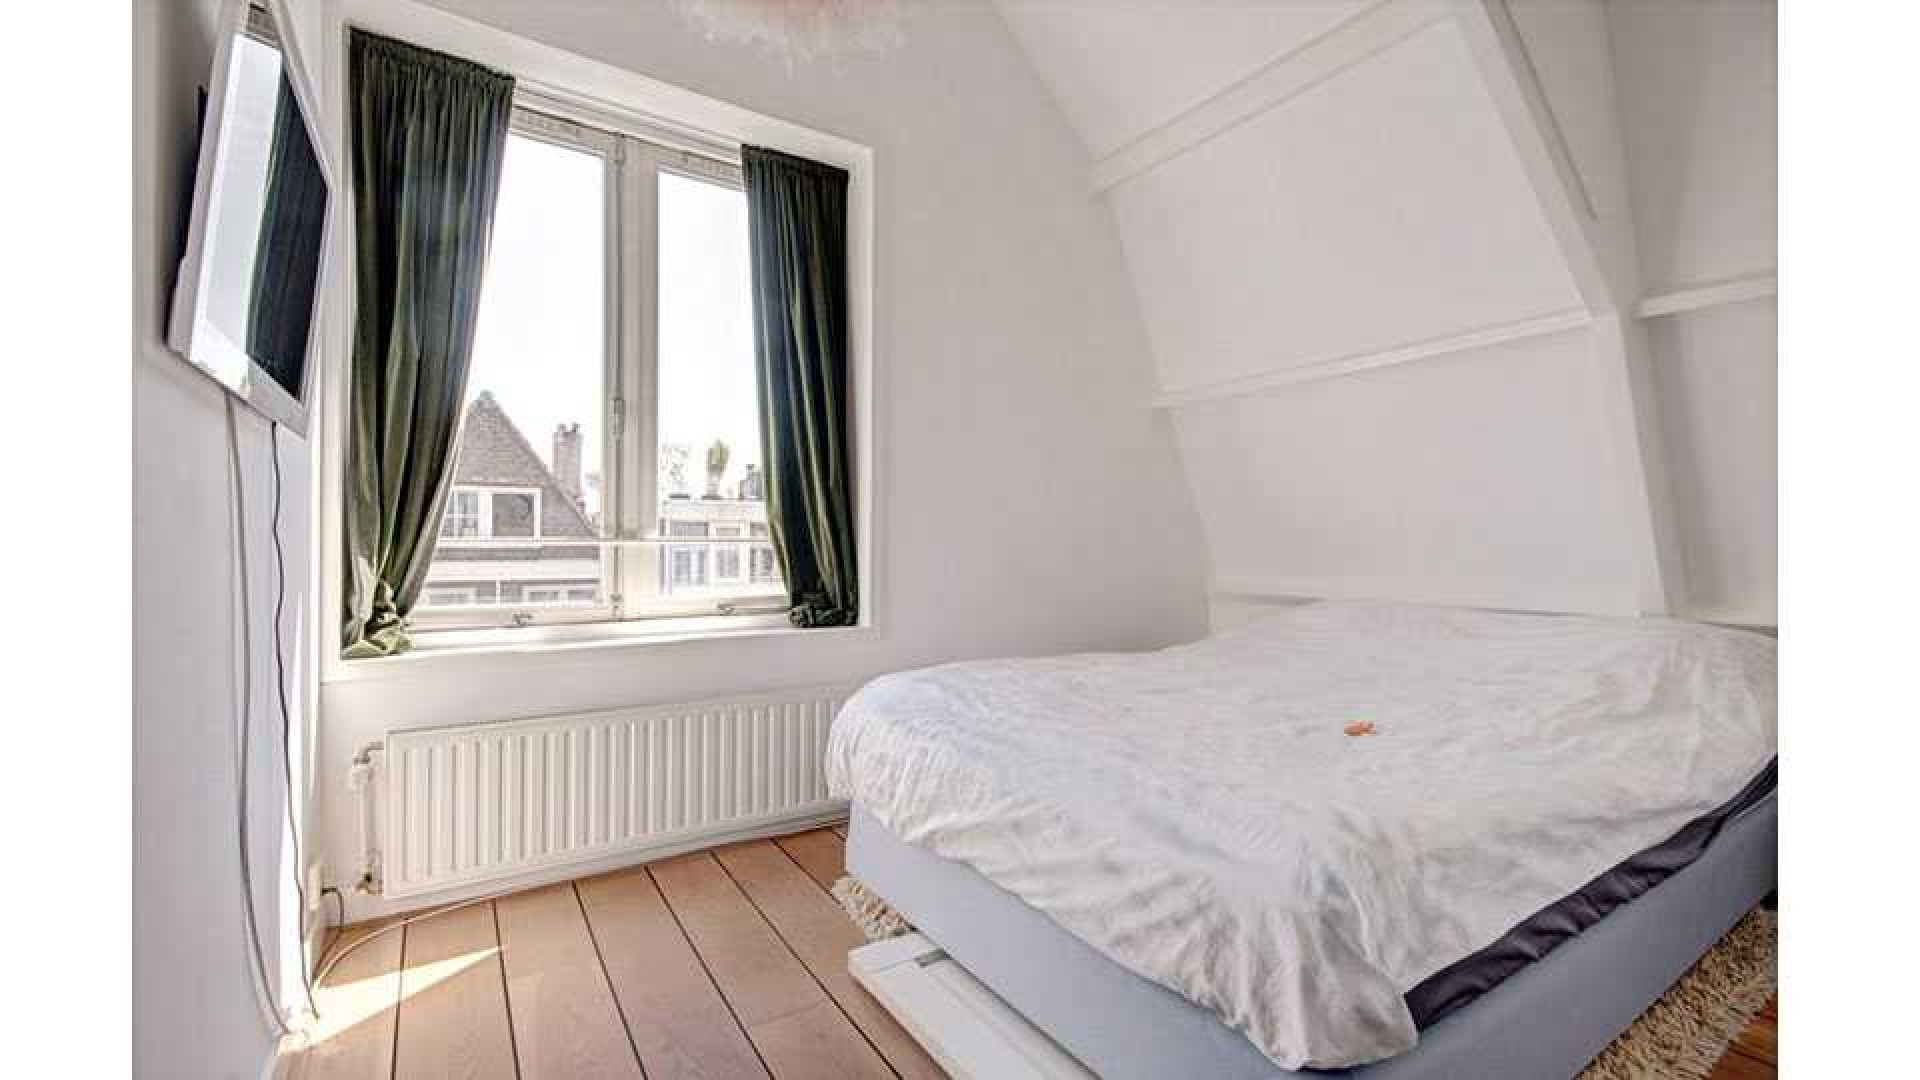 Stacey Rookhuizen verkoopt haar mini penthouse zwaar boven de vraagprijs. Zie foto's 13